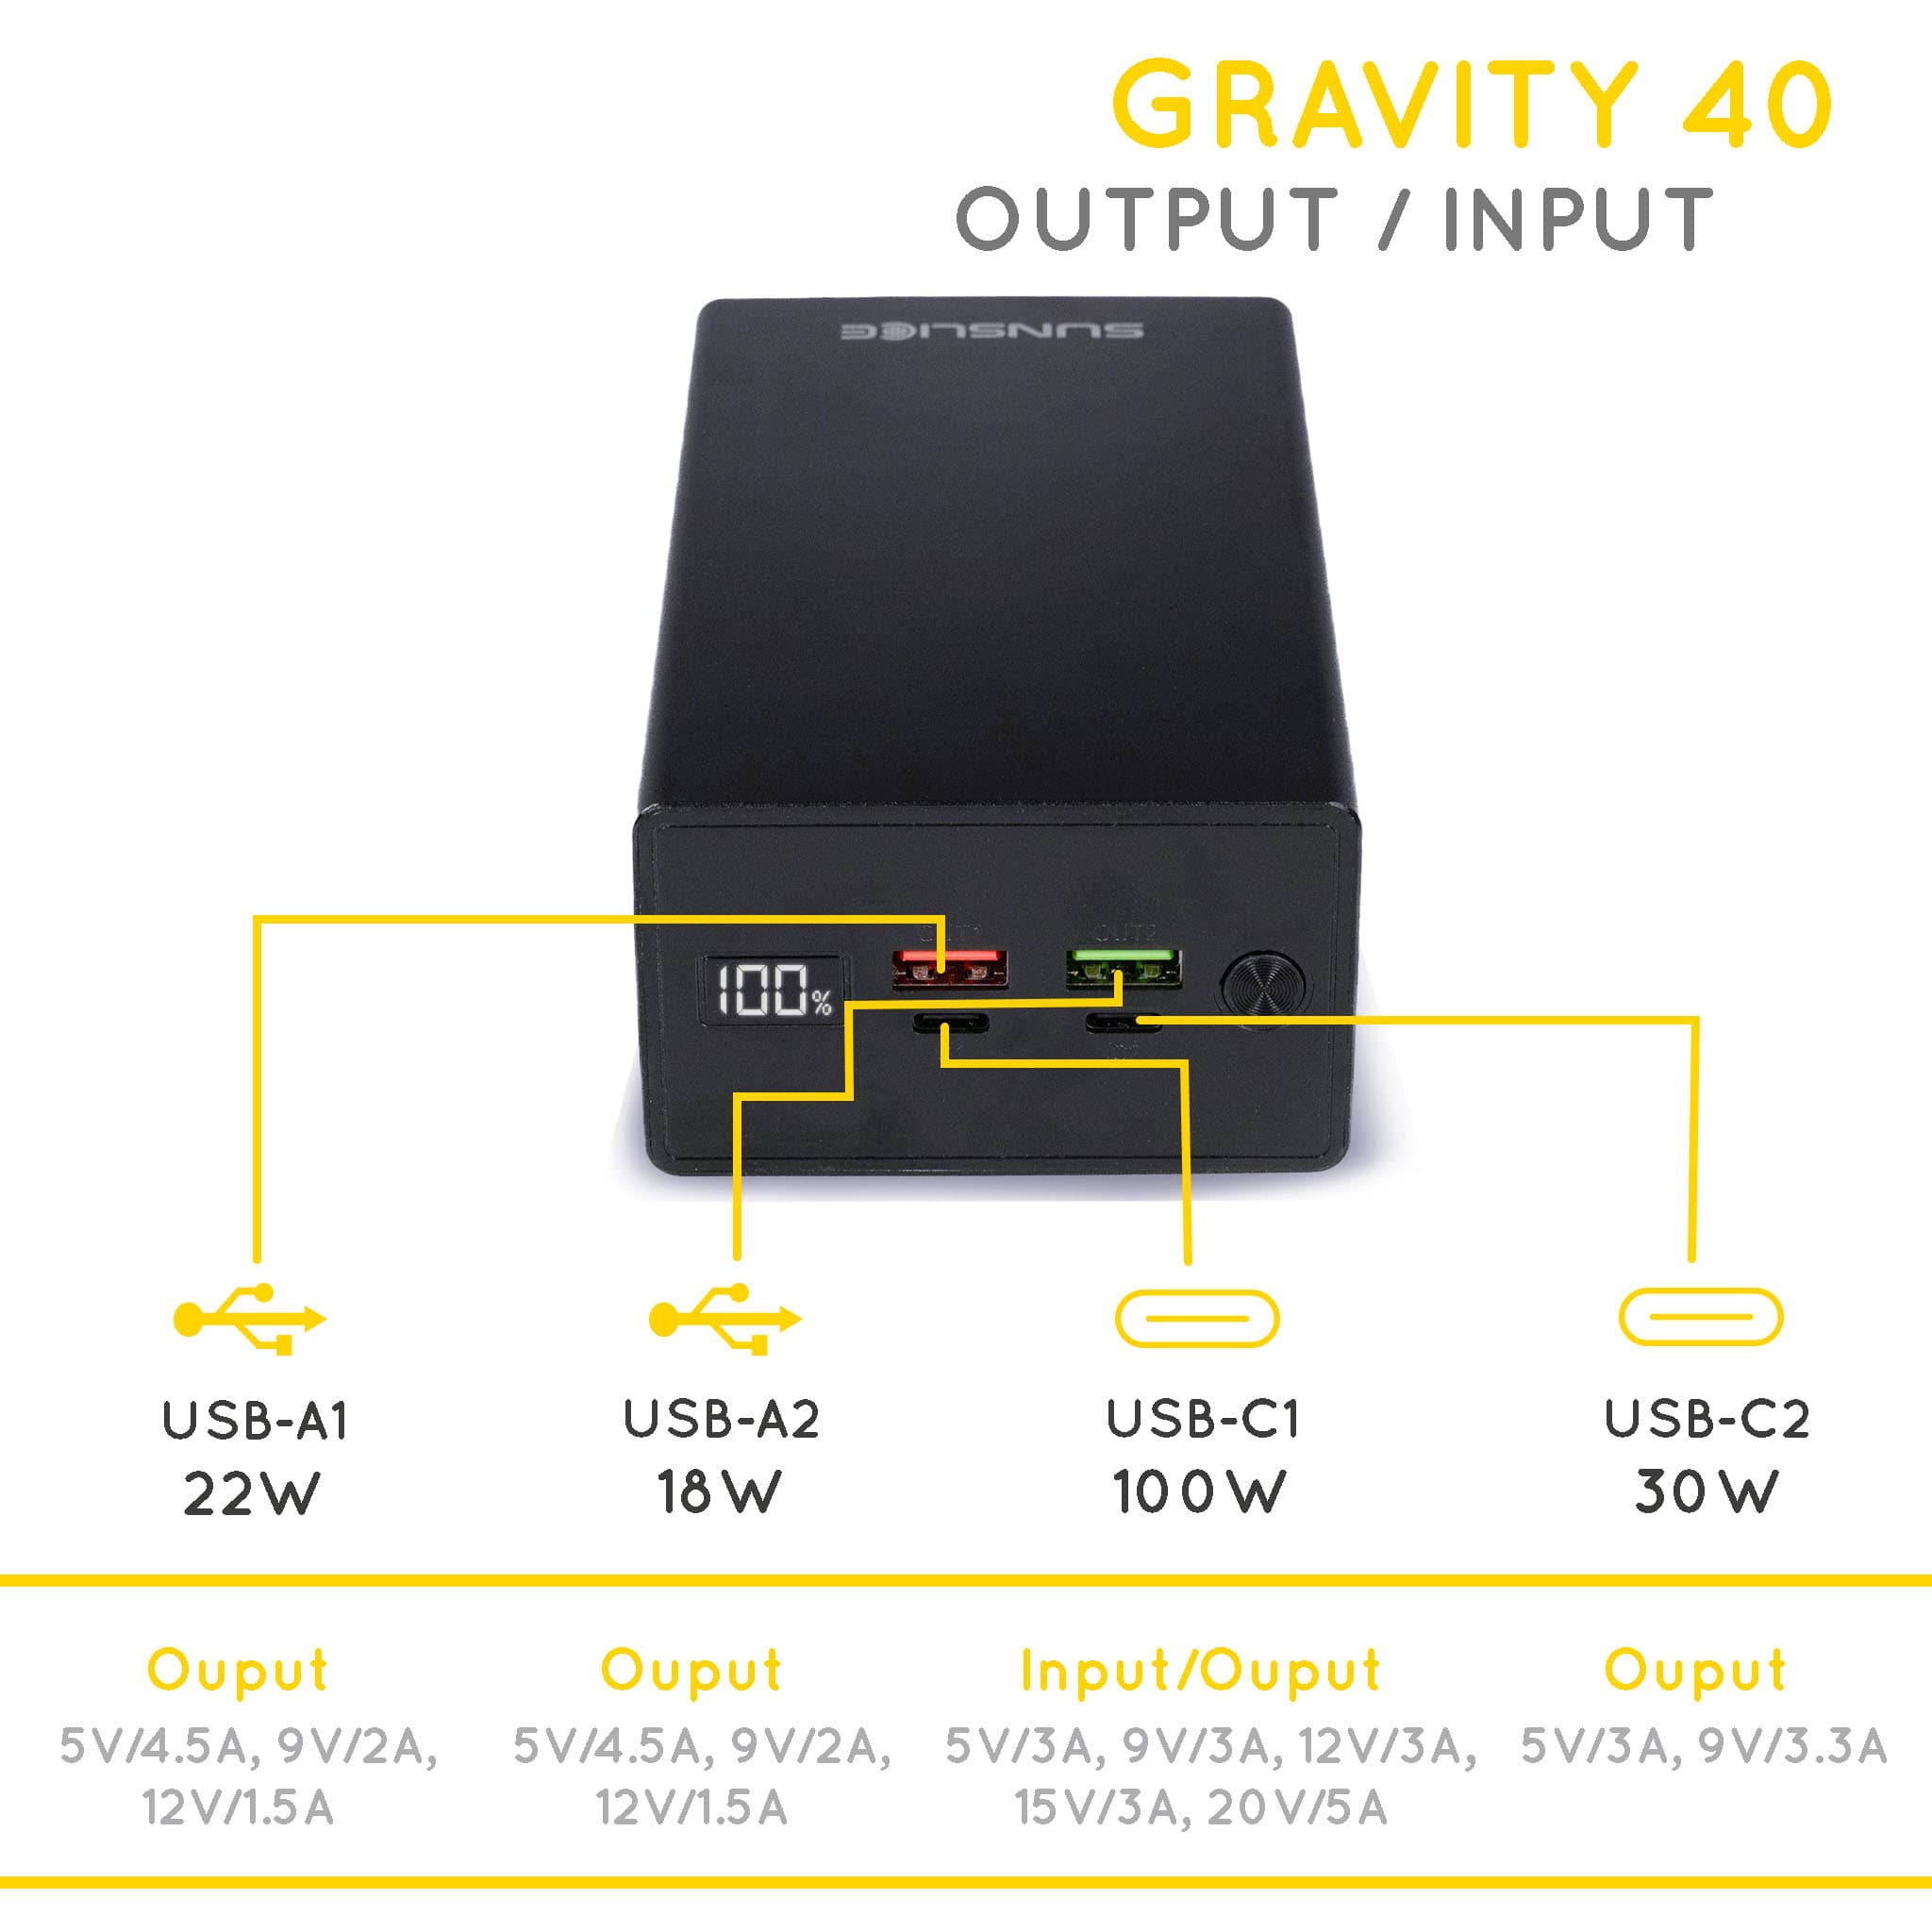 Gravity 40 Pufferbatterien für Laptop-Ausgang/Eingang: USB-A1 22W, USB-A2 18W, USB-C1 100W, USB-C2 30W